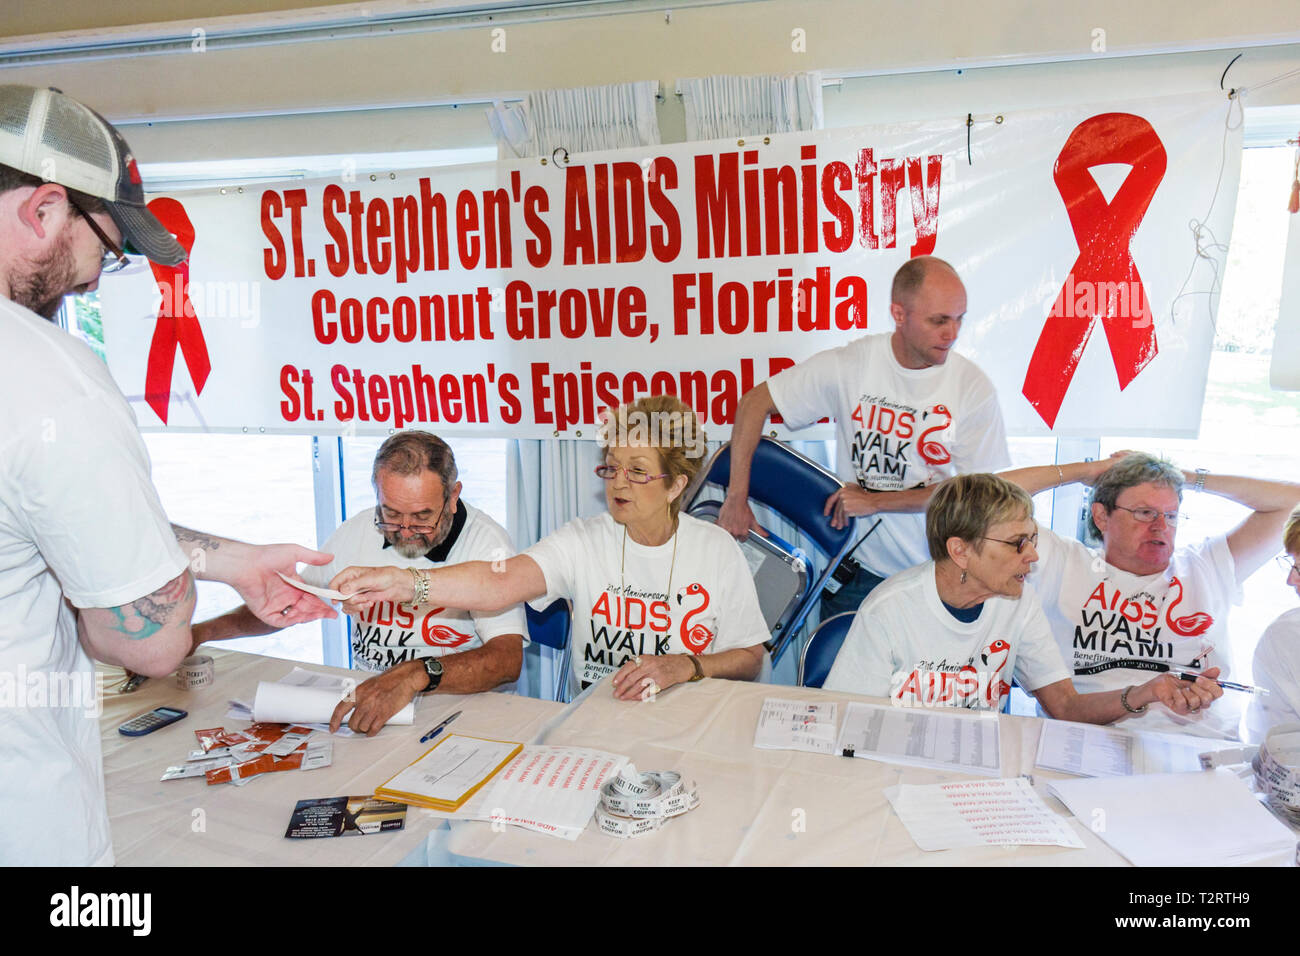 Miami Beach Florida,AIDS Walk Miami,Care Resource,HIV,Epidemic,Community Resource,Benefit,charité,collecteur de fonds,bénévoles bénévoles bénévoles bénévoles travaillent pour eux Banque D'Images